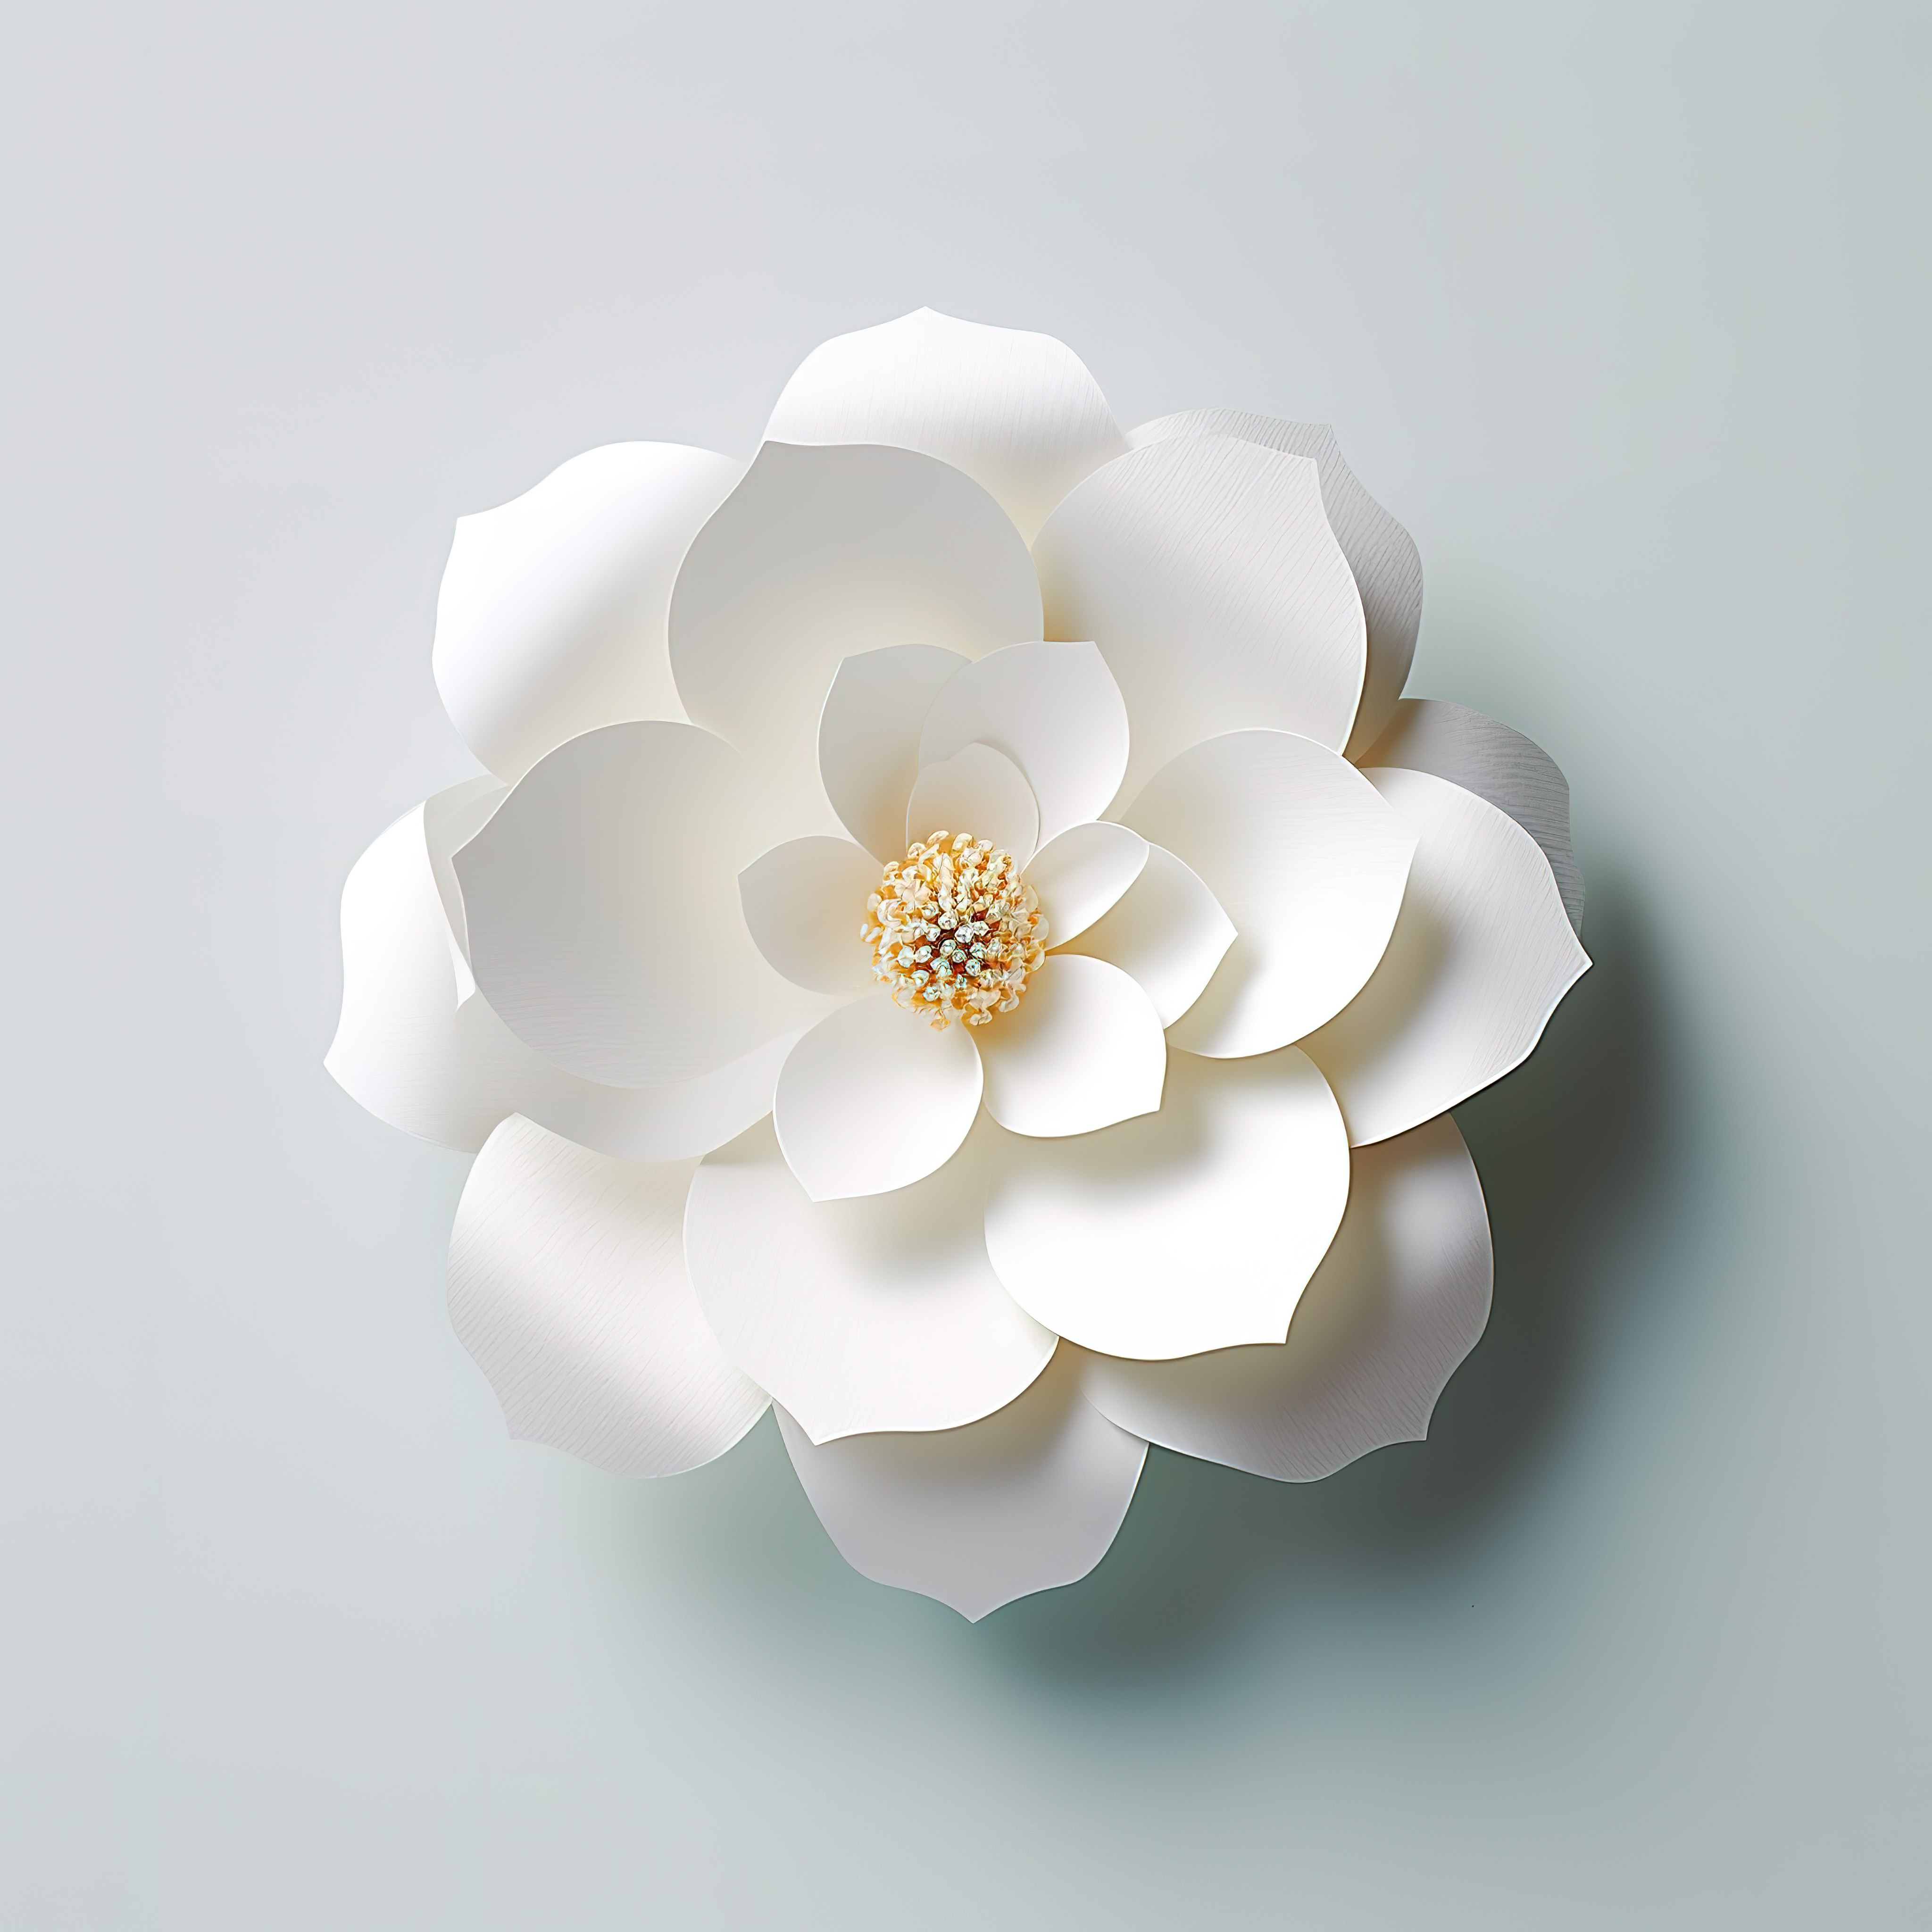 一朵白色的纸花粘在表面上图片